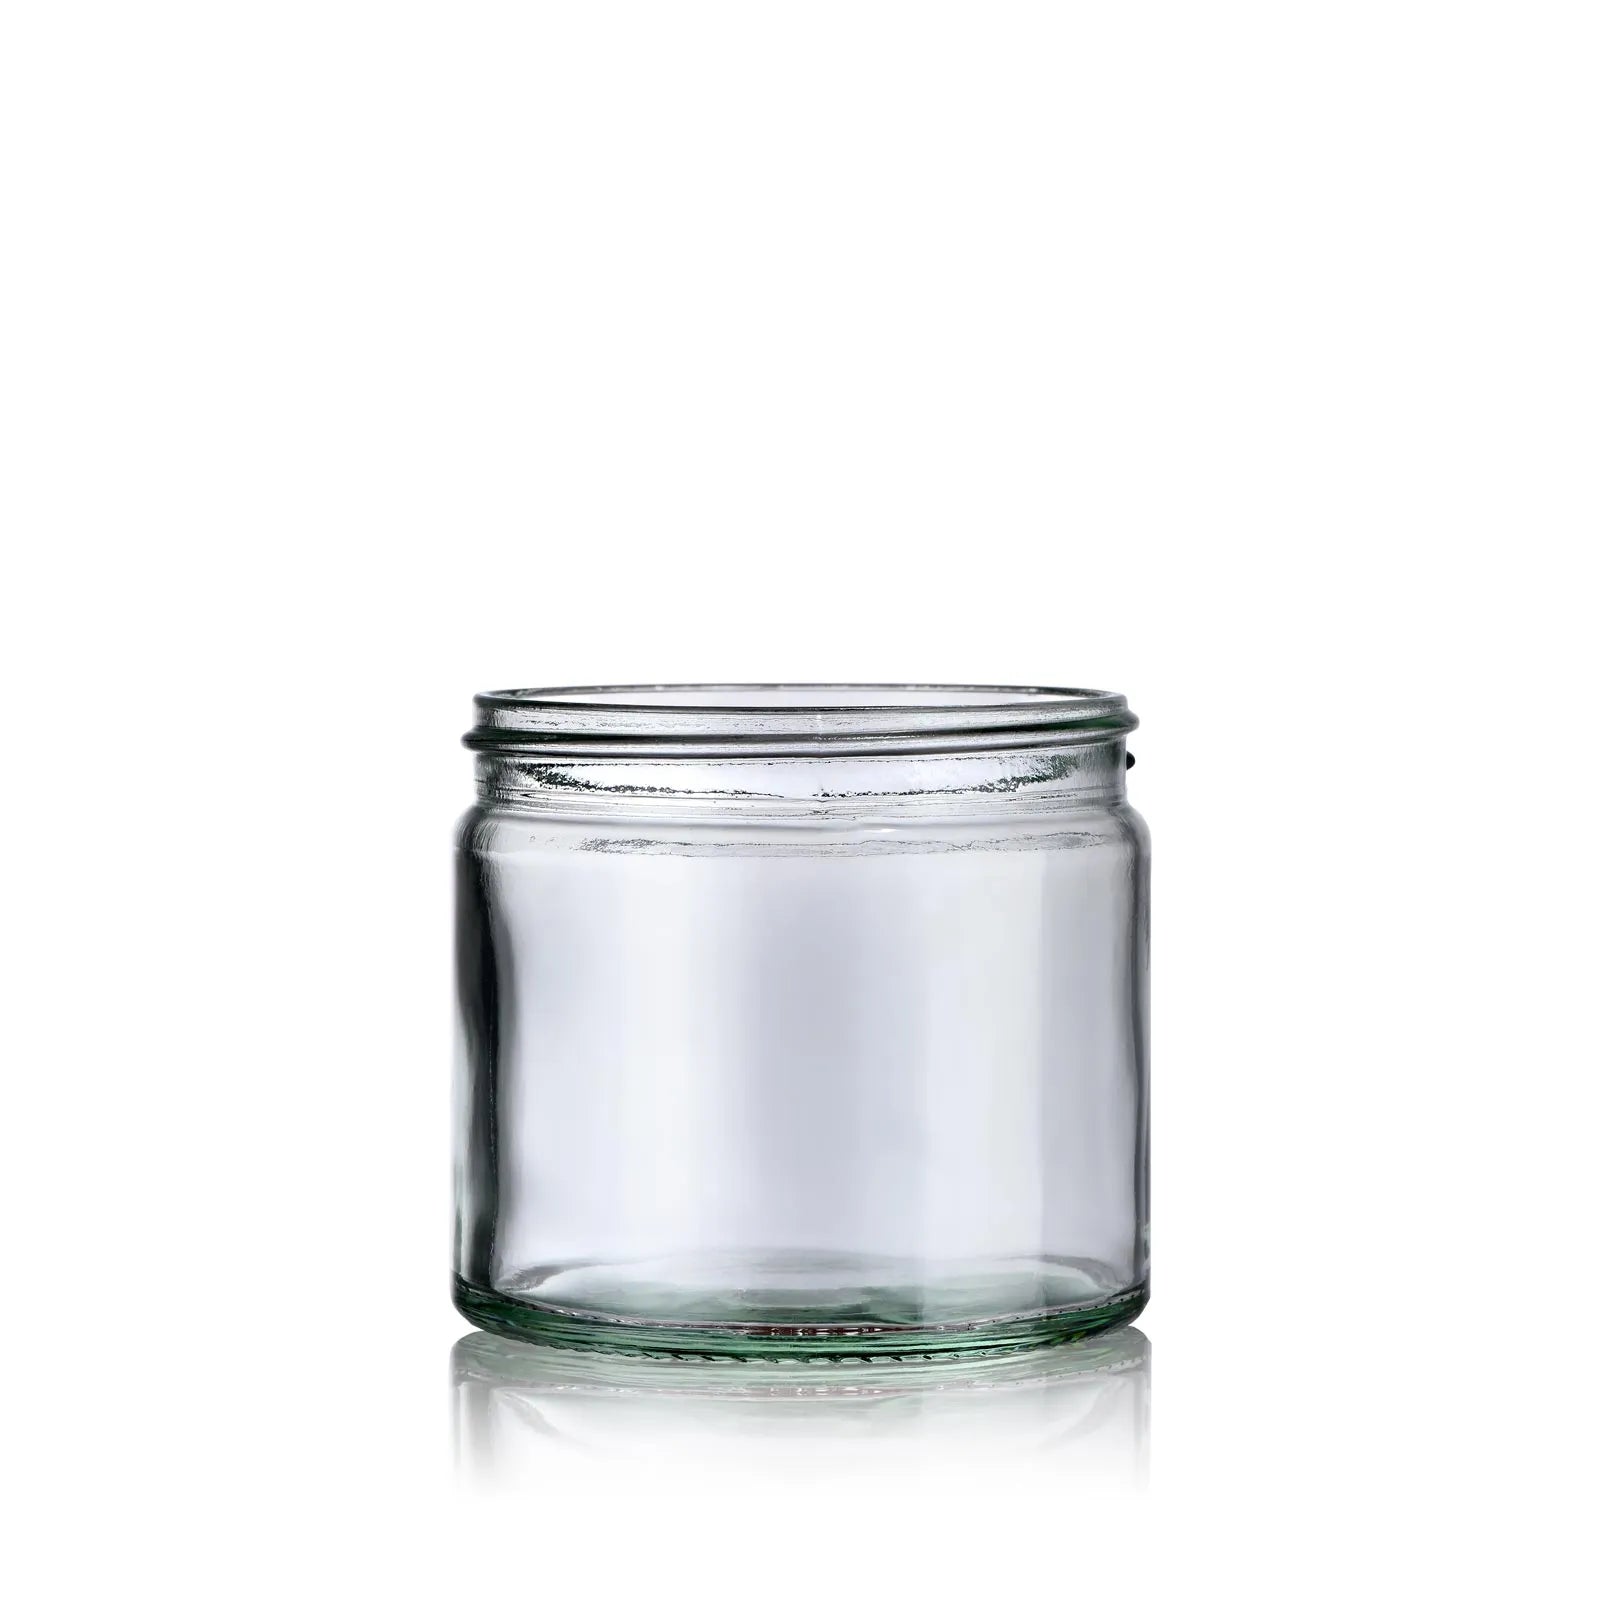 Contenant en verre transparent 8oz / 250ml couvercle en métal or -  Laboratoire Pure arôme - Fournisseur de matières premières cosmétiques DIY